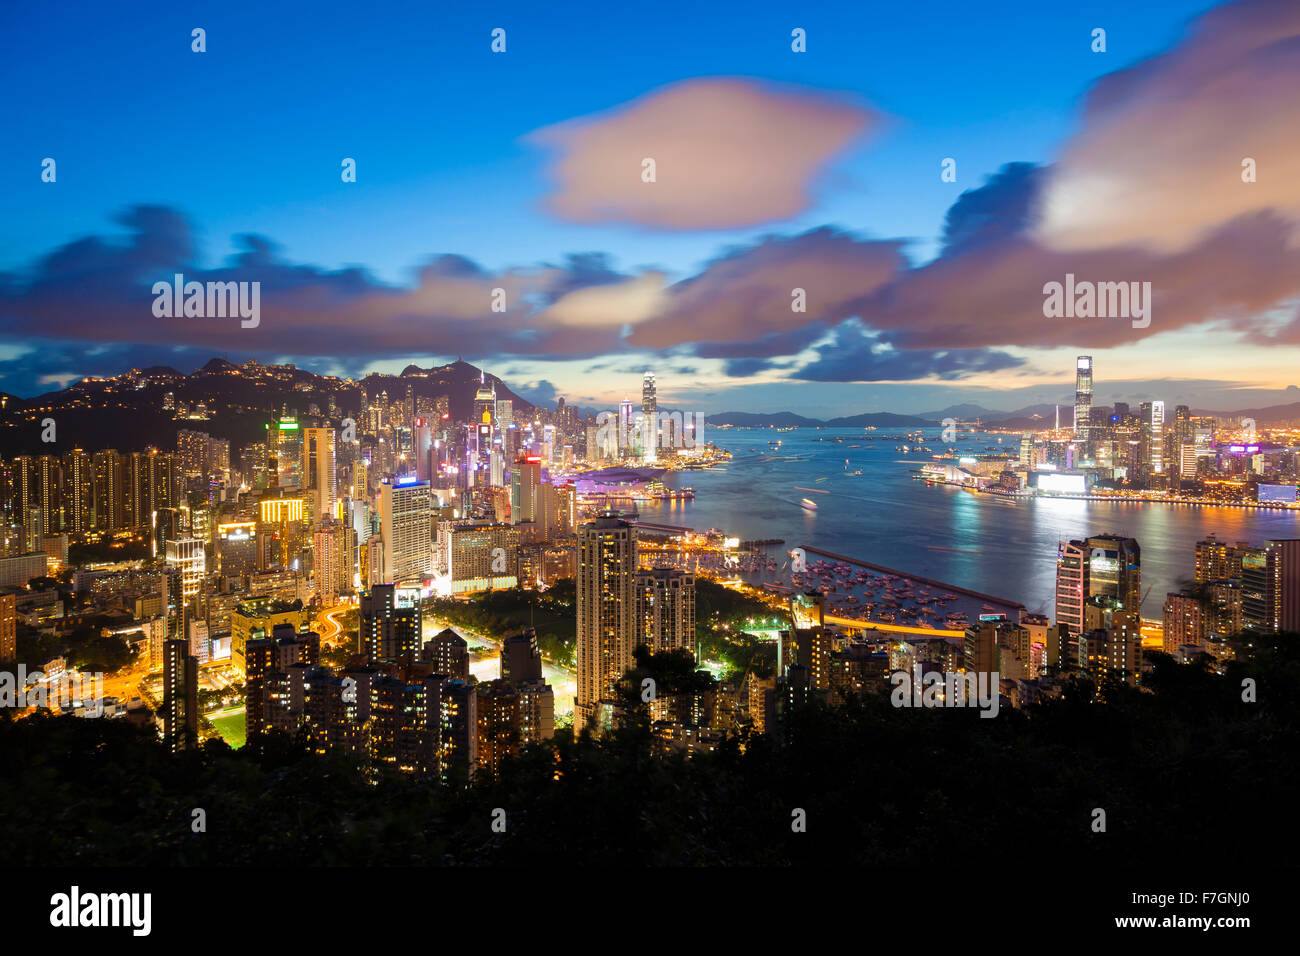 Hong Kong at night Stock Photo